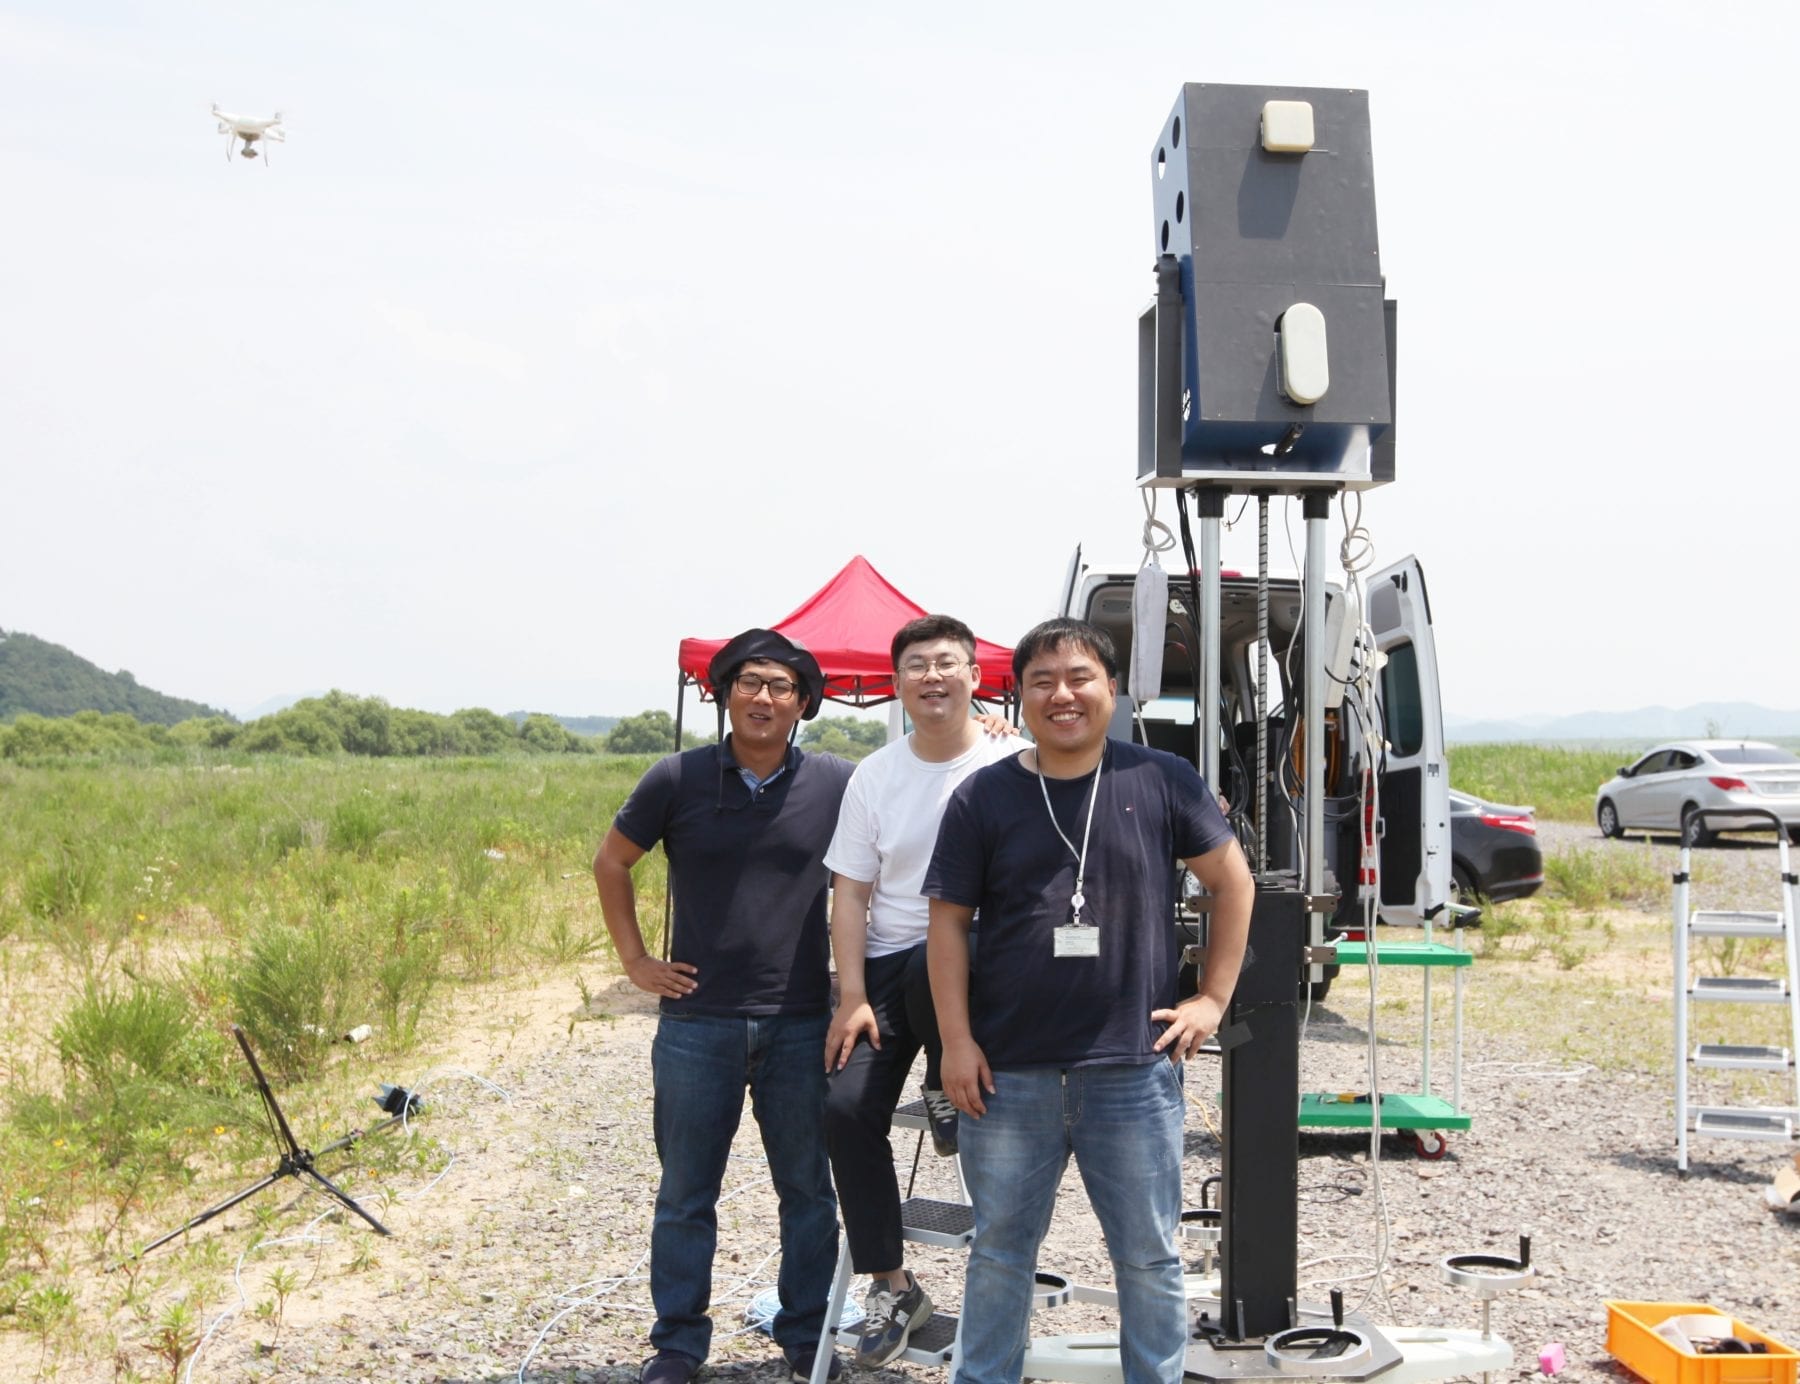 An AI Radar System That Can Spot Miniature Drones 3km away